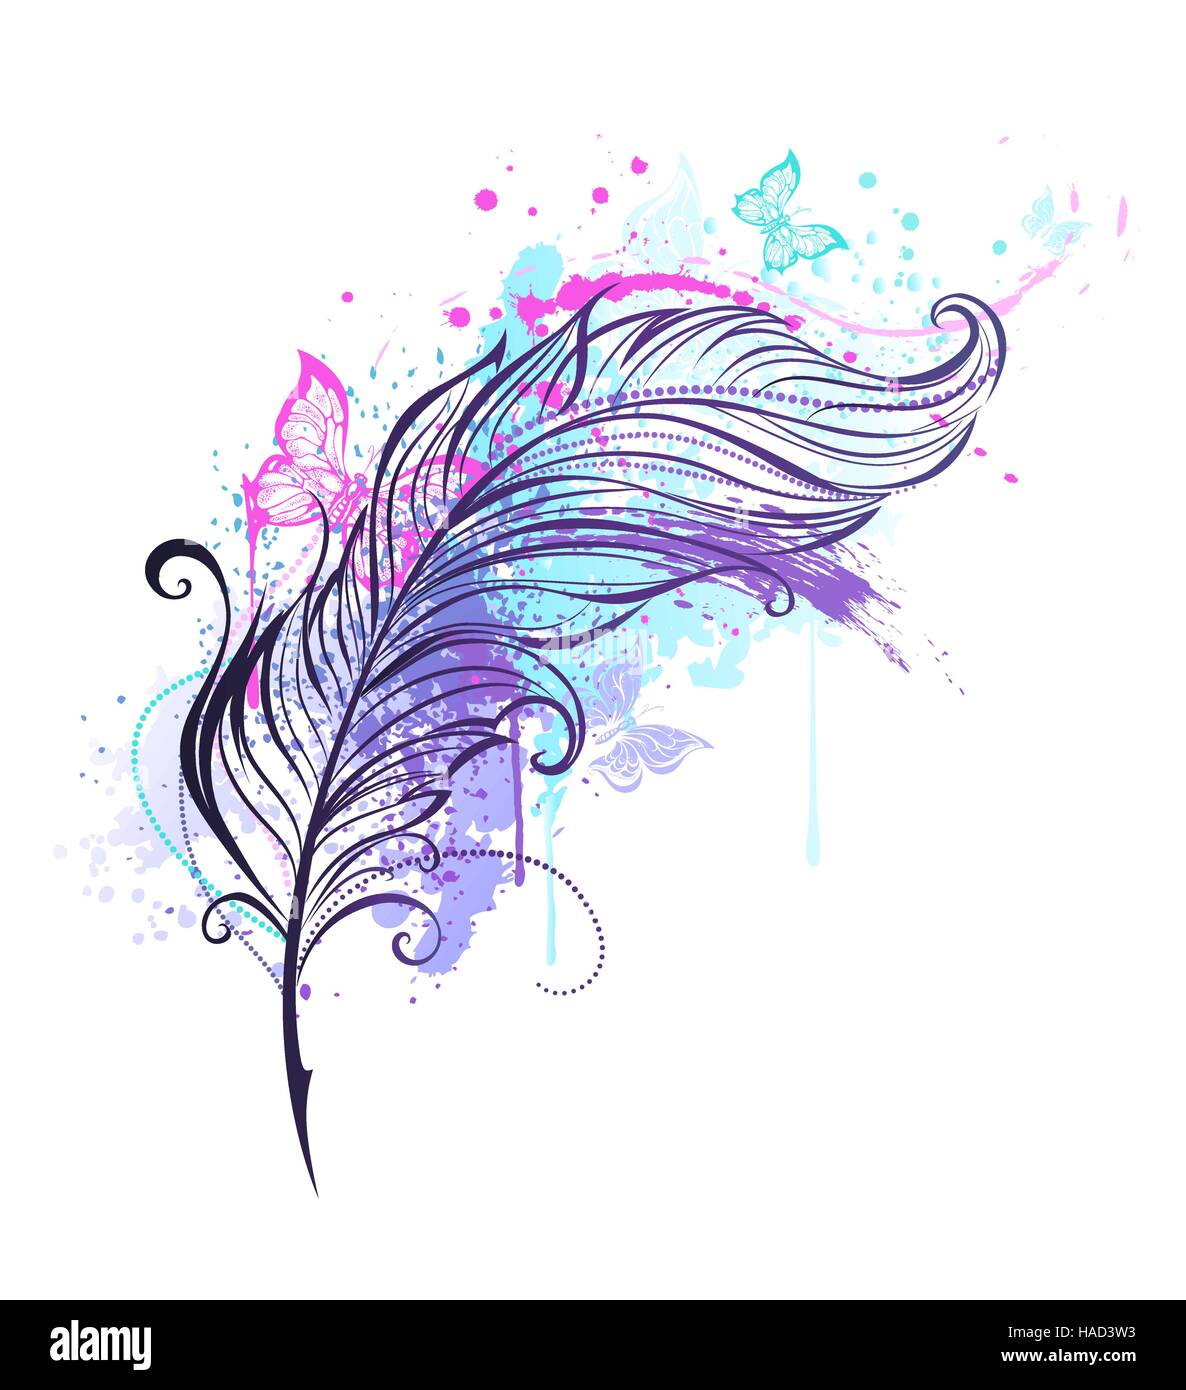 Piume di contorno con gocce di colori vivaci e colorate farfalle volare. Lo stile del tatuaggio Illustrazione Vettoriale